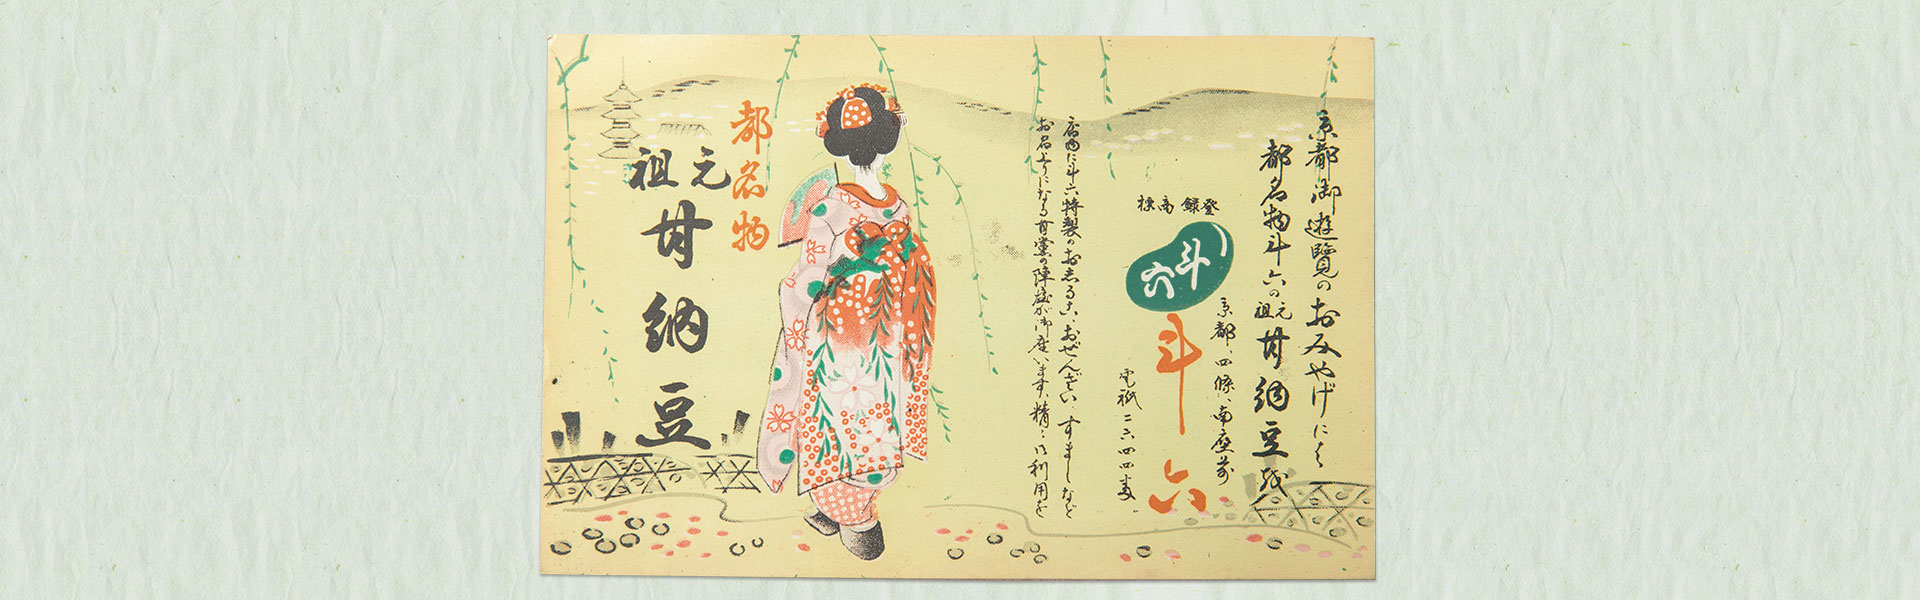 昭和元年より、京都で甘納豆一筋。職人が受け継ぐ伝統の味をこれからも。